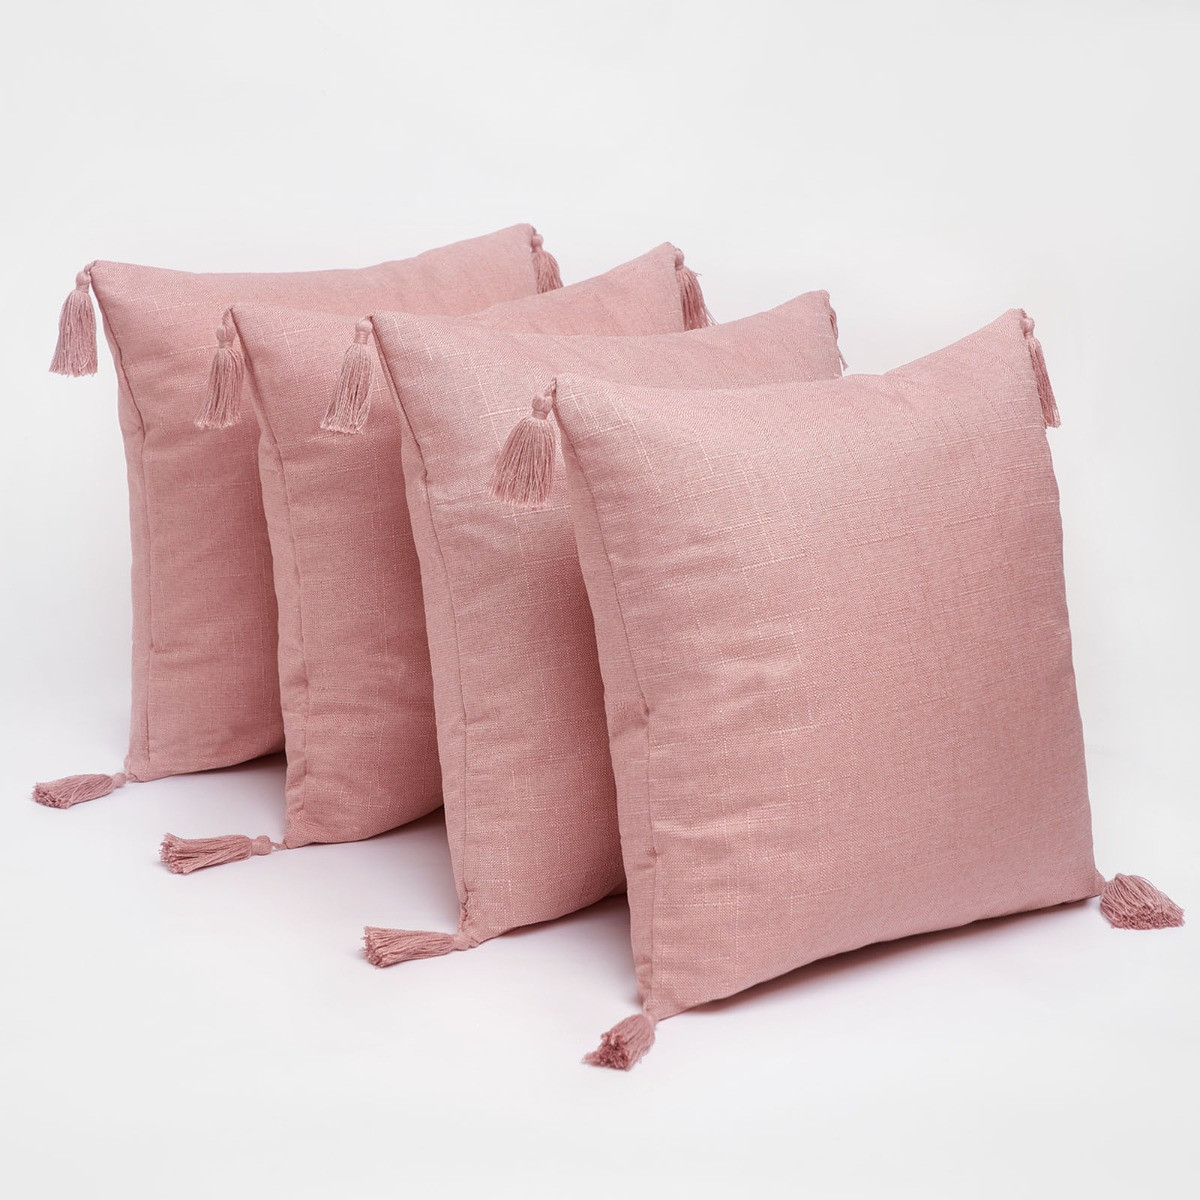 Dreamscene 4 pack Tassel Cushion Covers - Blush>